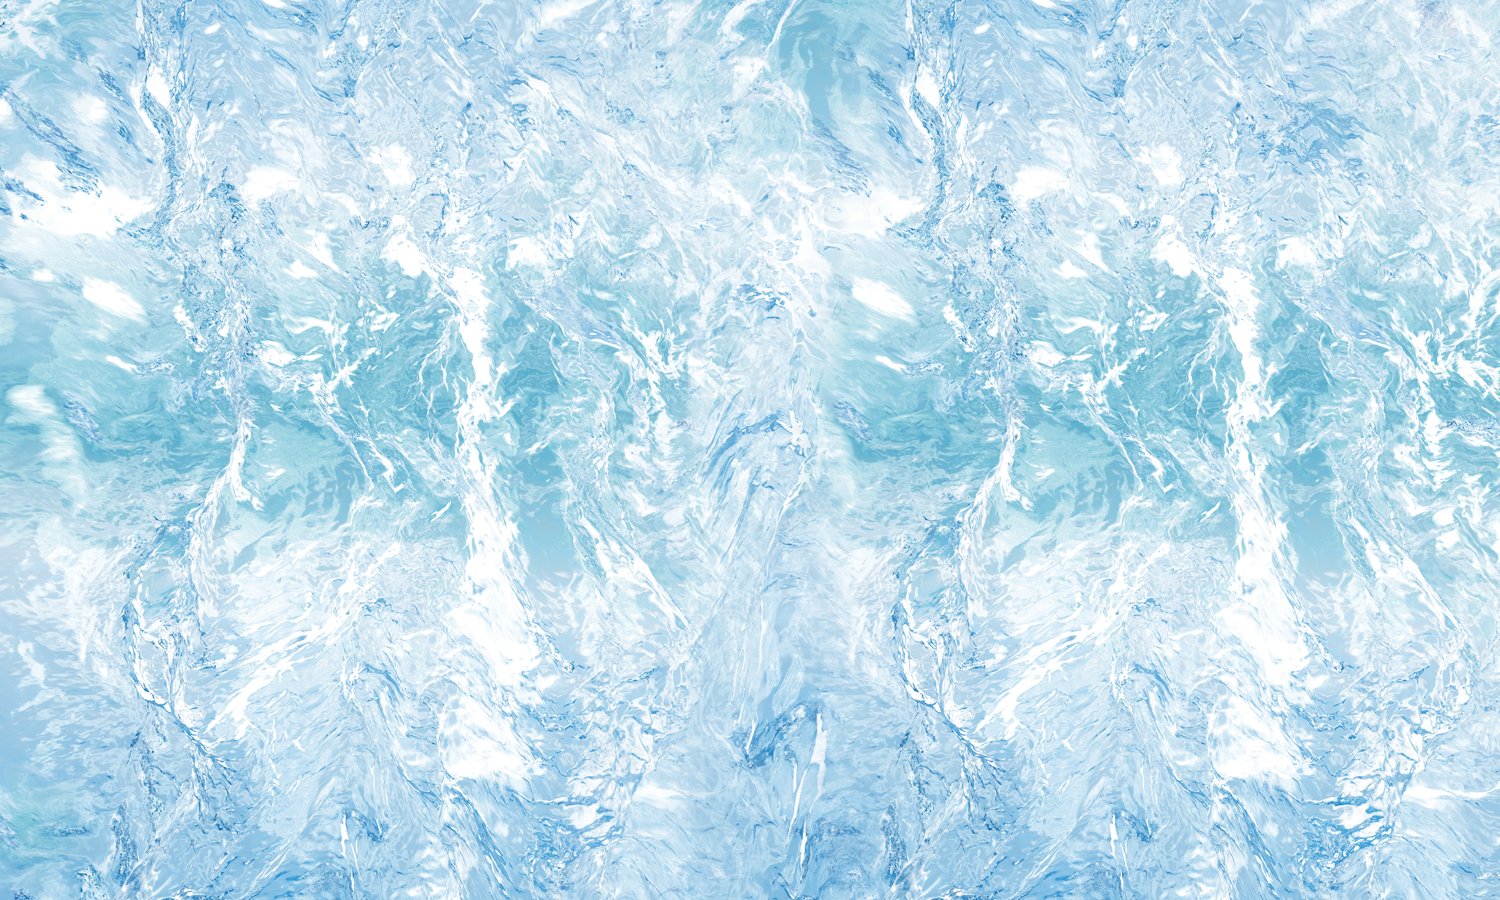 Samolepilna PVC folija za pohištvo- Modri led  PAT057